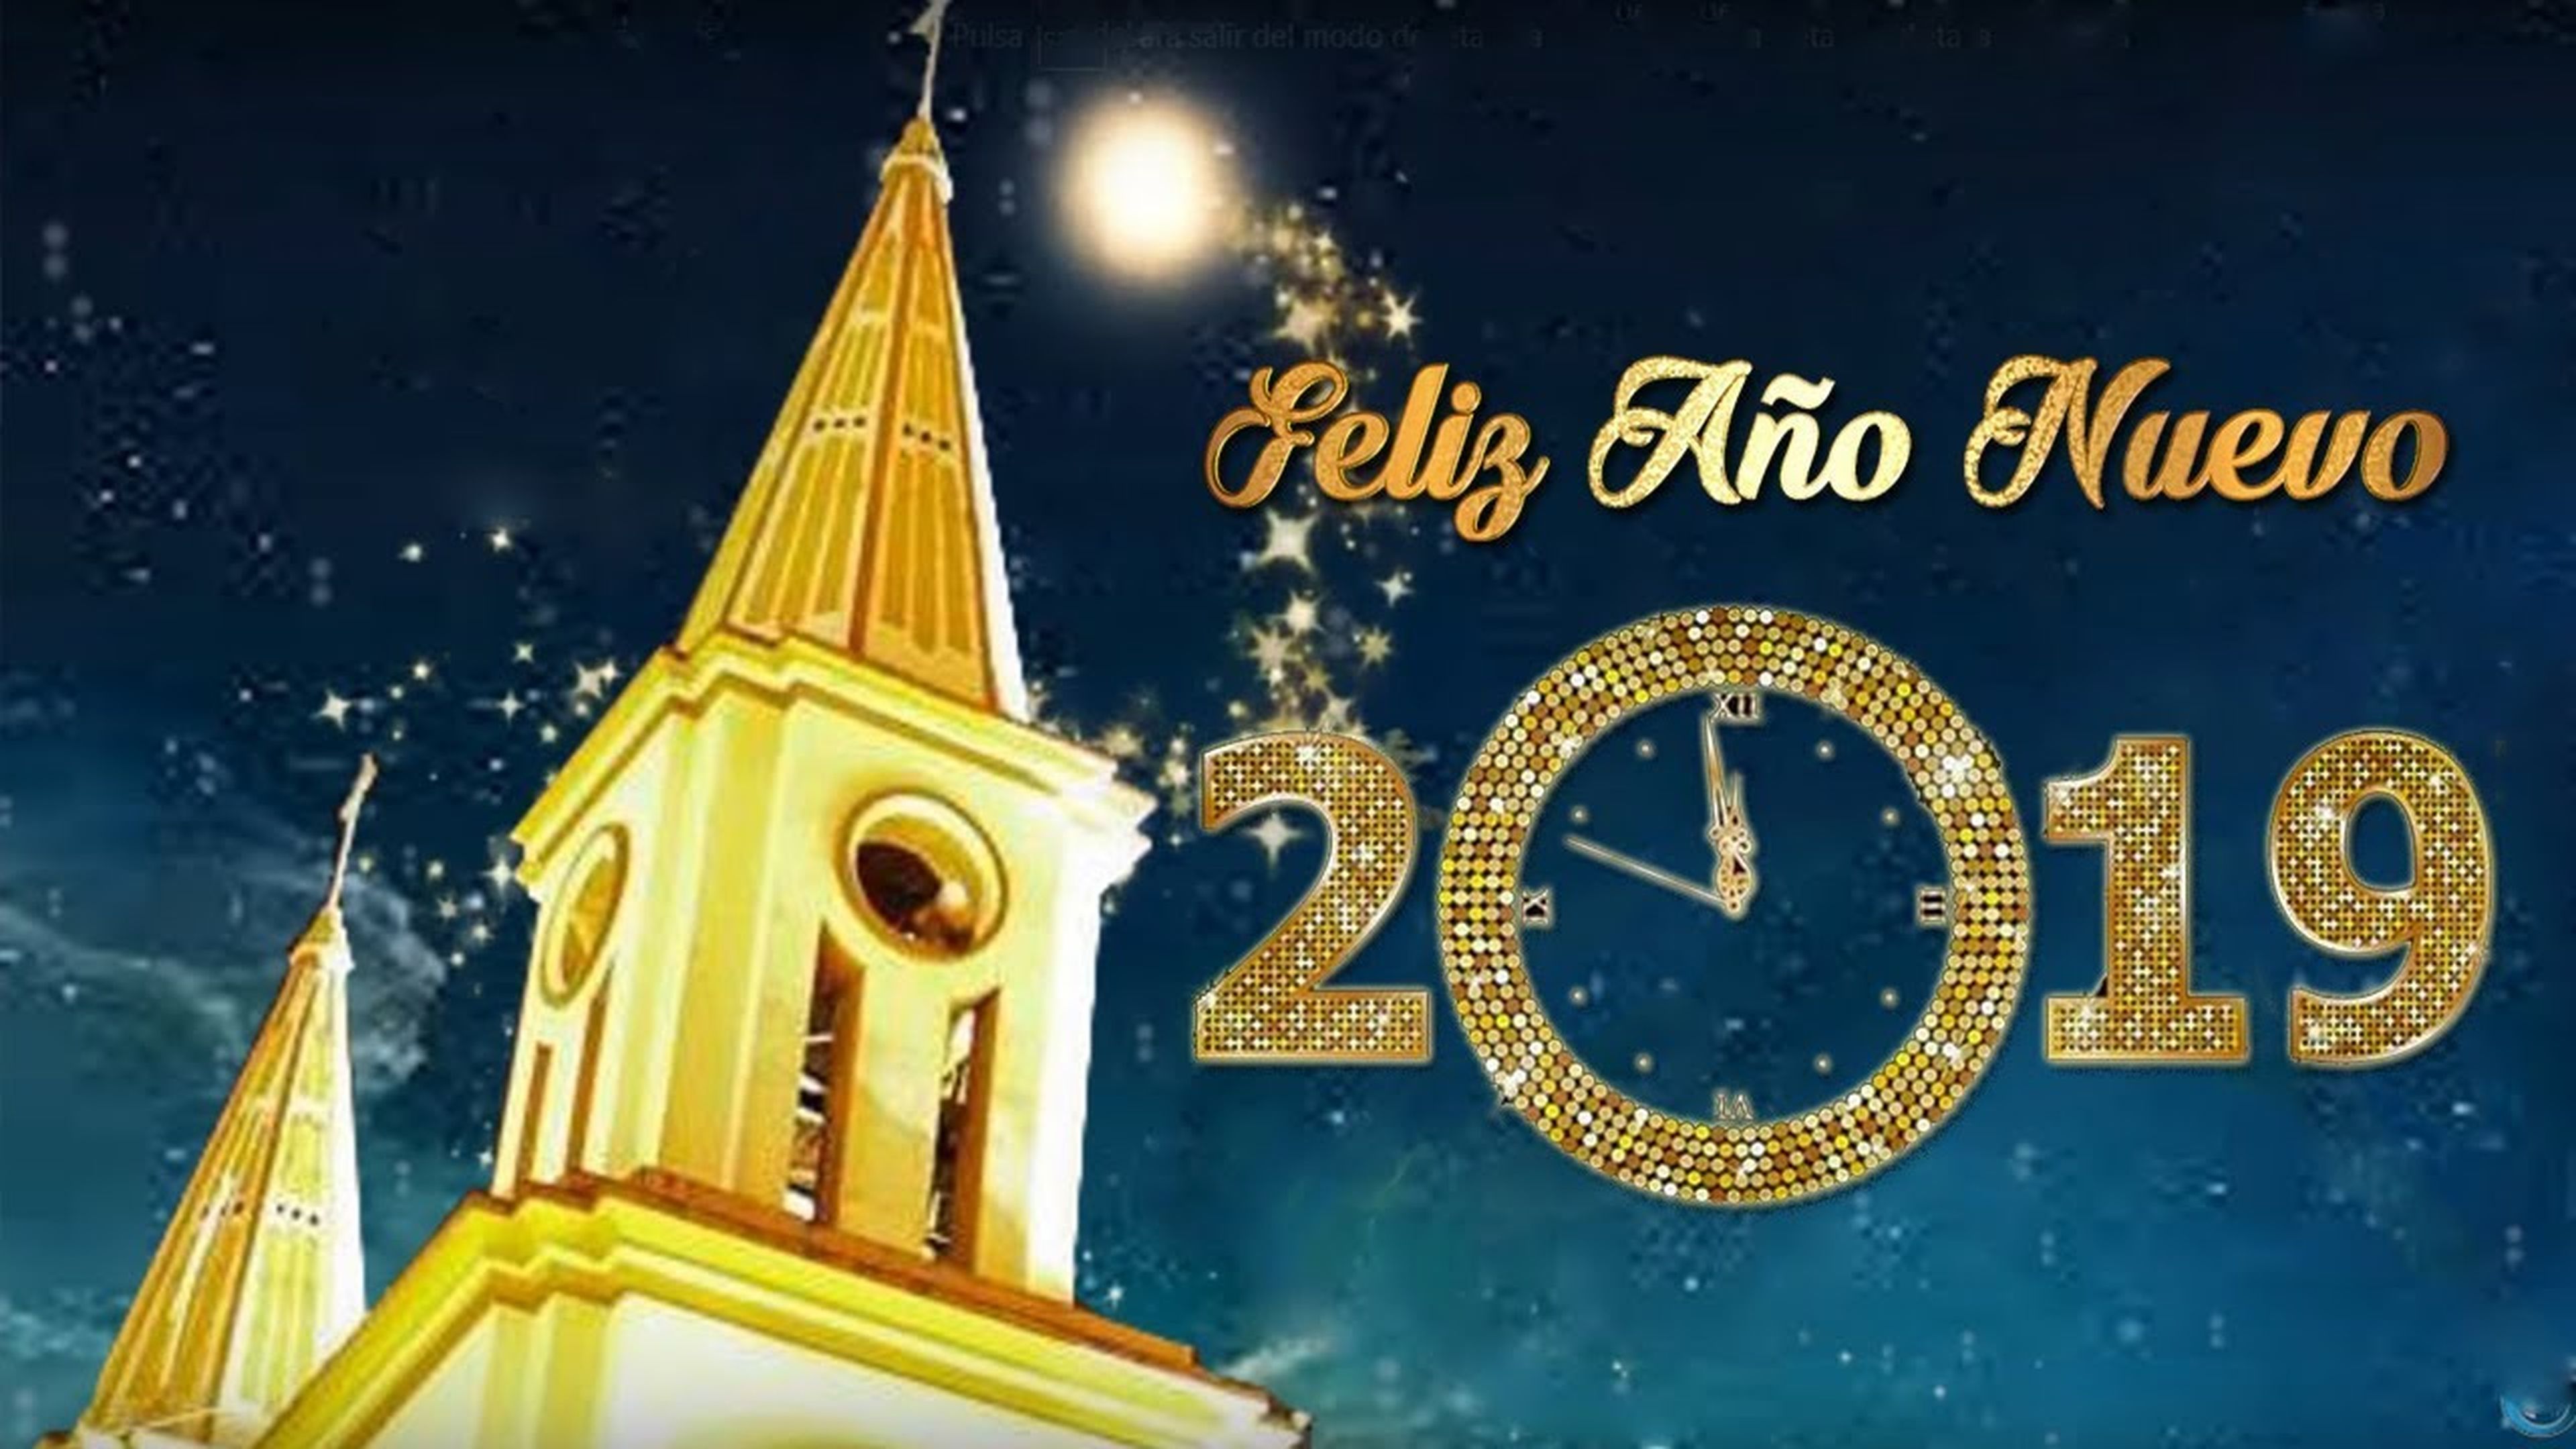 Felicitaciones de fin de año, nochevieja y año nuevo 2019 para WhatsApp